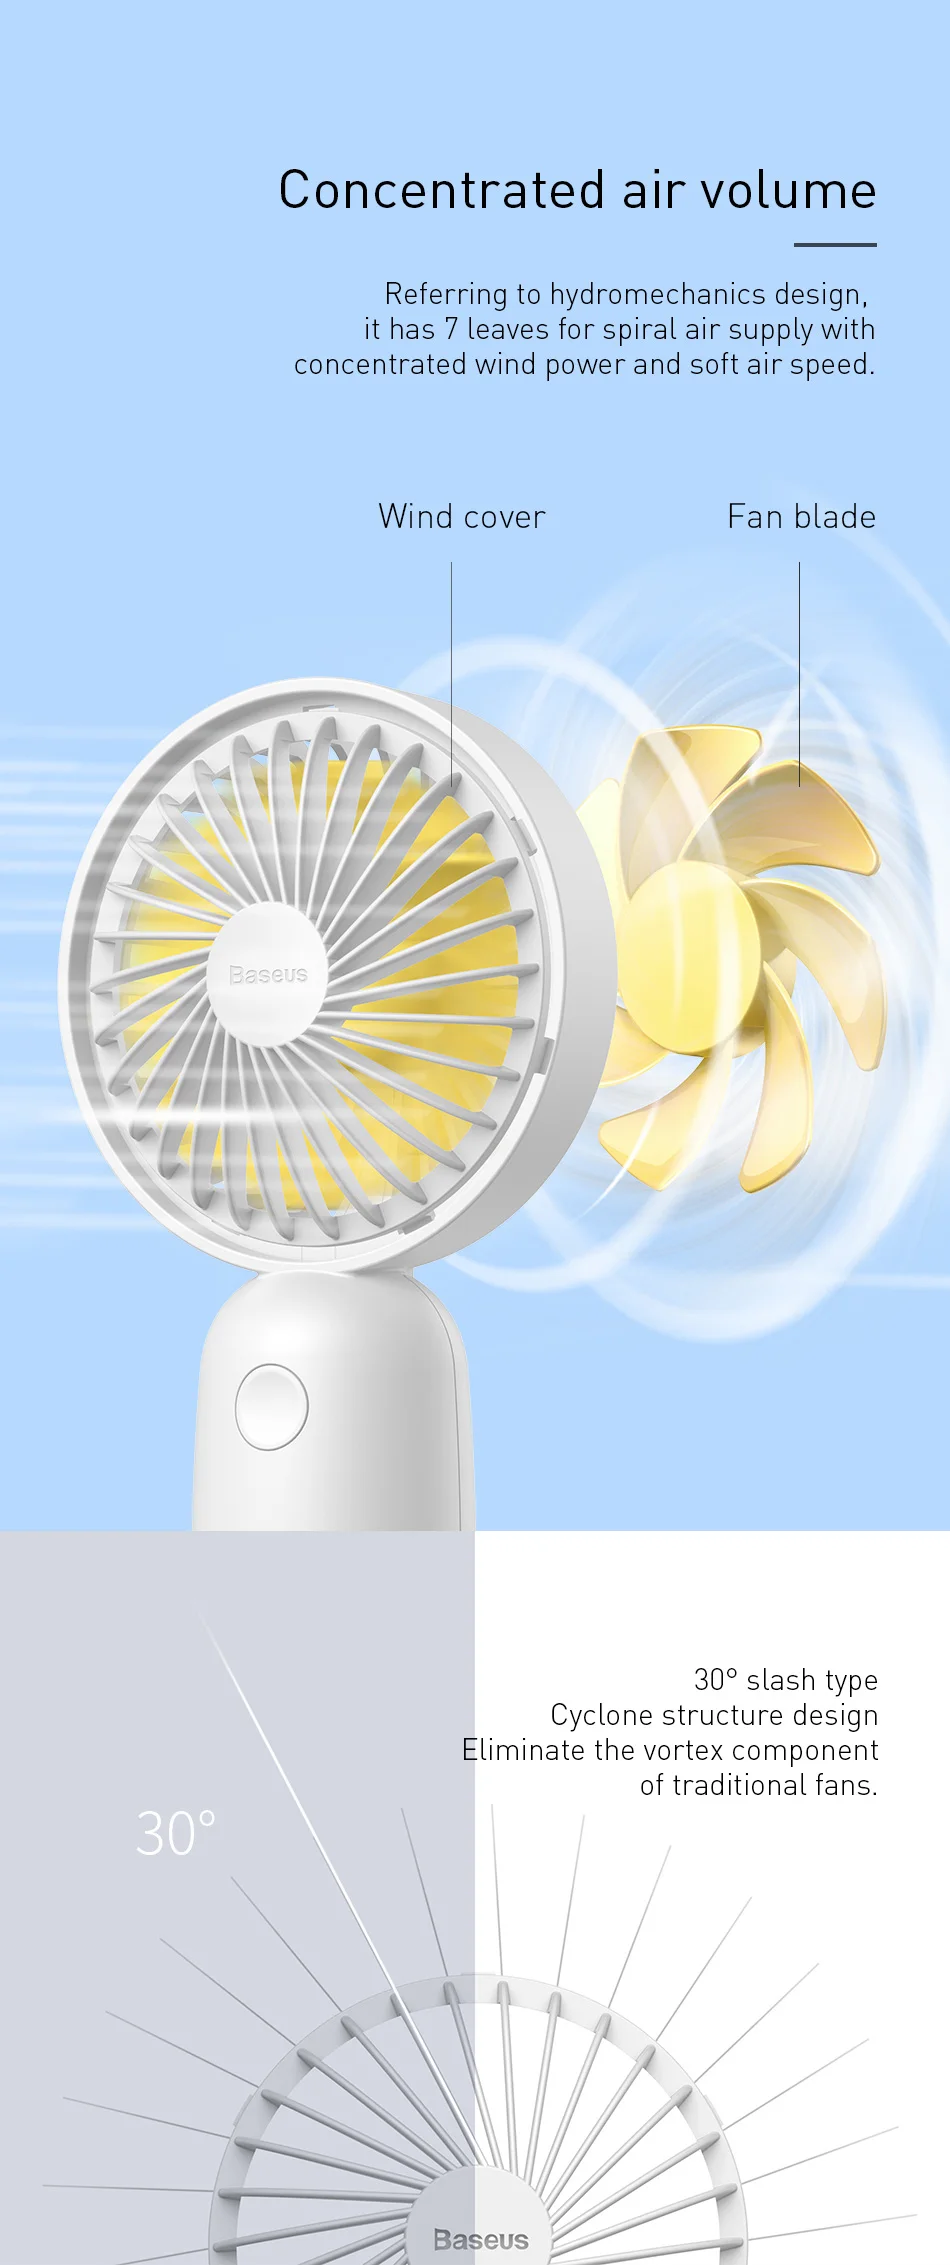 Baseus Портативный USB вентилятор портативный мини-вентилятор с светодиодный светильник летом кулер охлаждения Электрический вентилятор 3-Скорость Регулируемый офисный гаджет